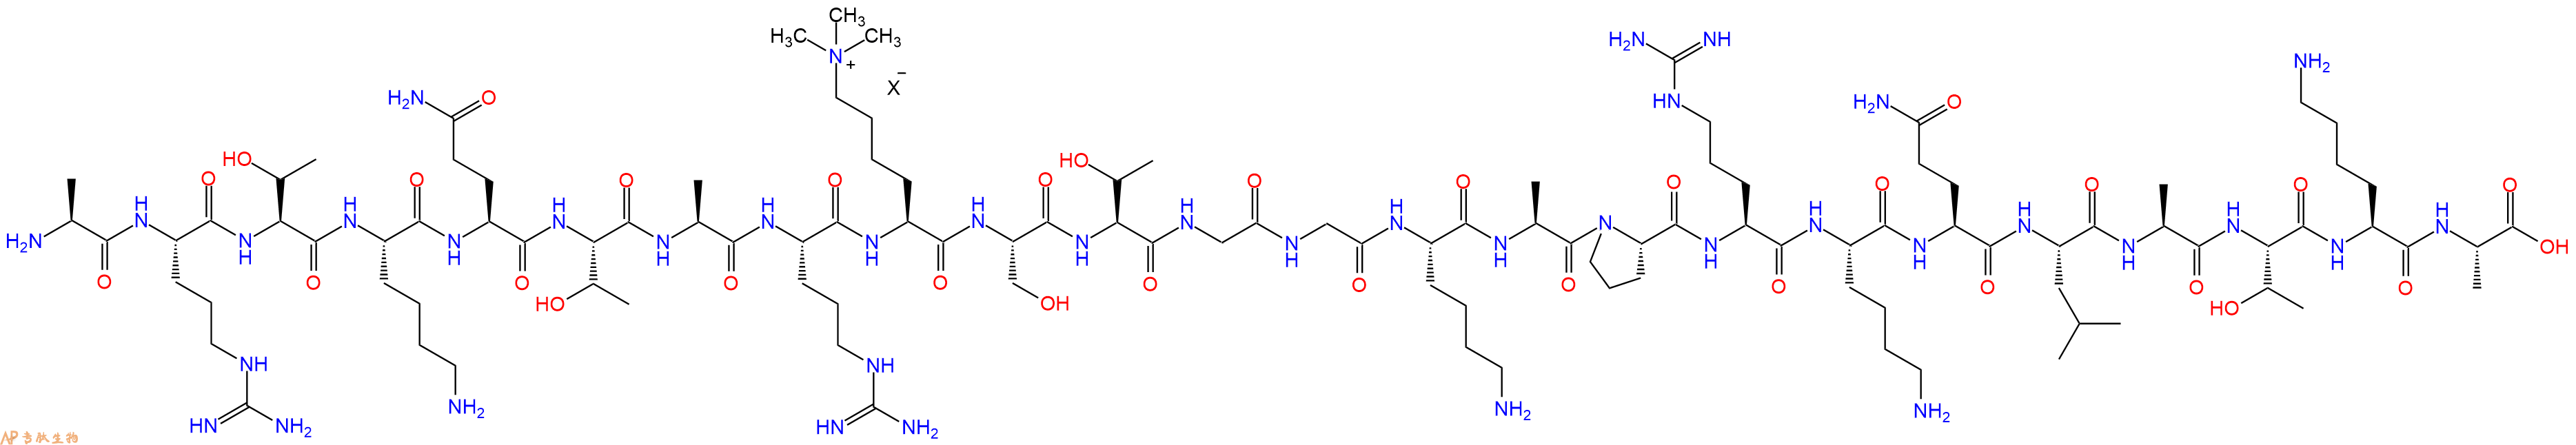 专肽生物产品组蛋白肽段[Lys(Me3)9]-Histone H3(1-24), H3K9(Me3)